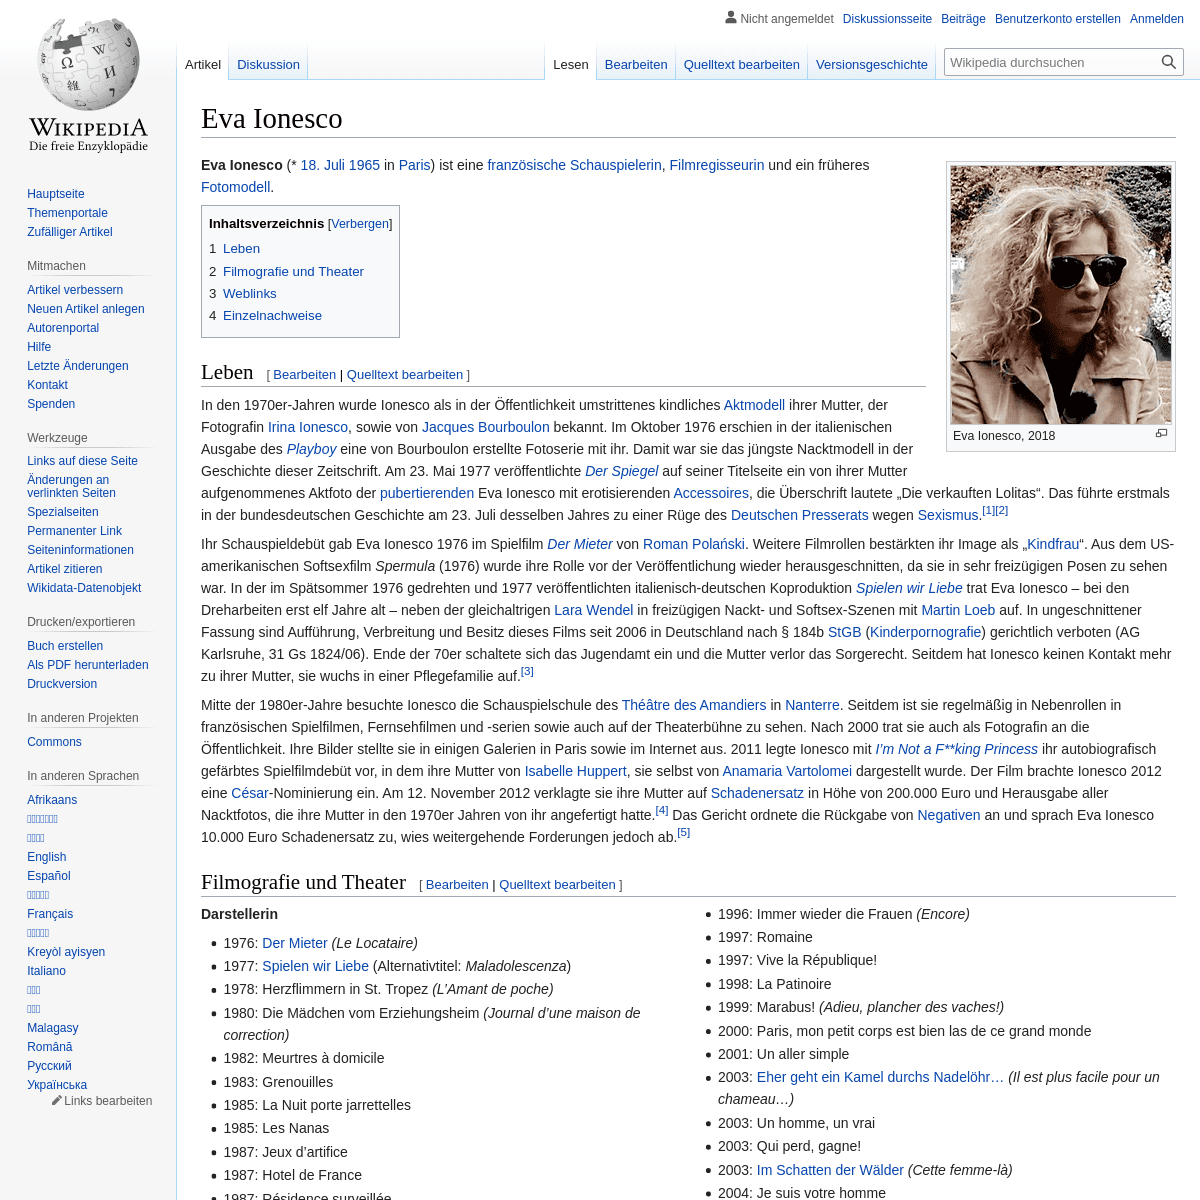 A complete backup of https://de.wikipedia.org/wiki/Eva_Ionesco